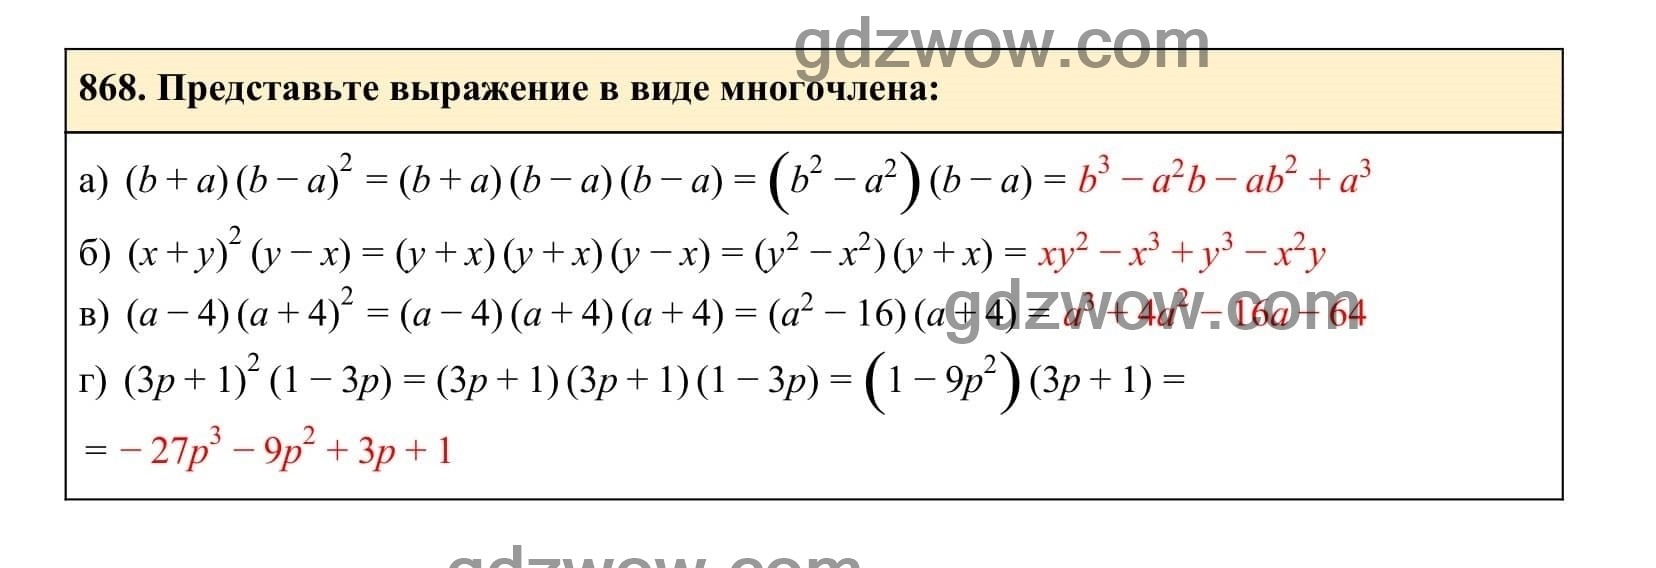 Упражнение 868 - ГДЗ по Алгебре 7 класс Учебник Макарычев (решебник) - GDZwow